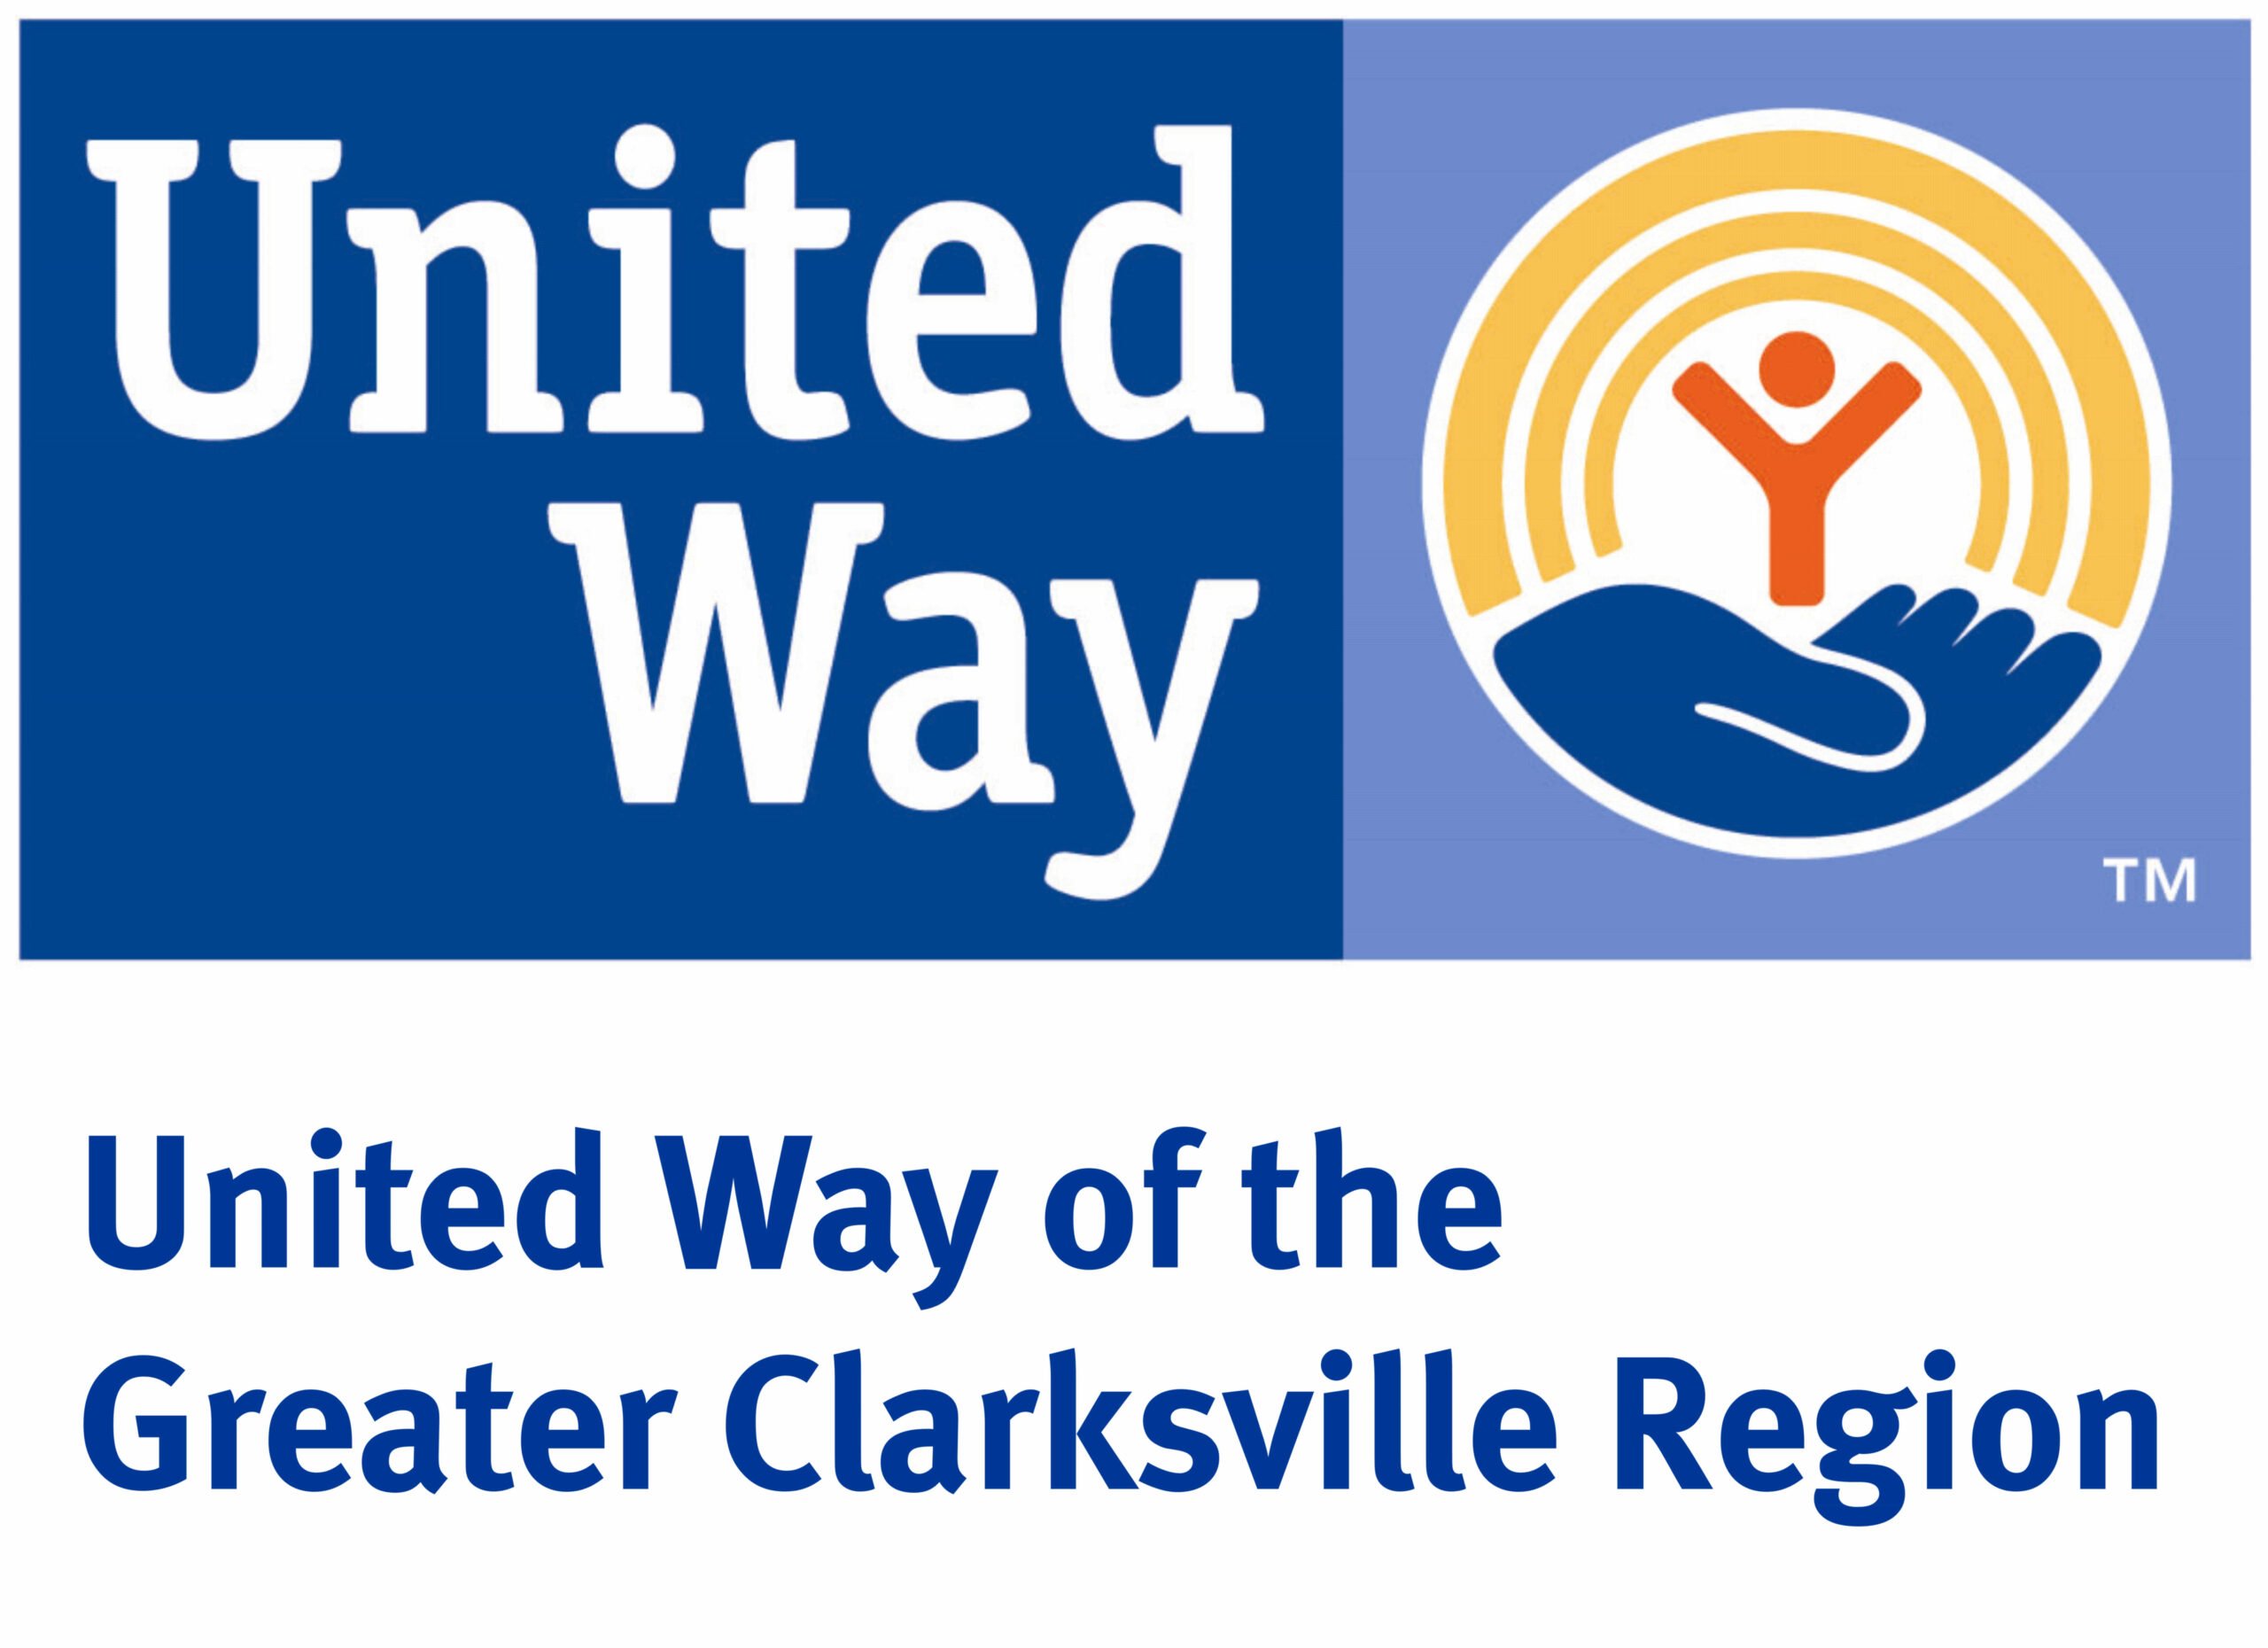 United Way - Customer of MidTenn Alarms - Clarksville, TN